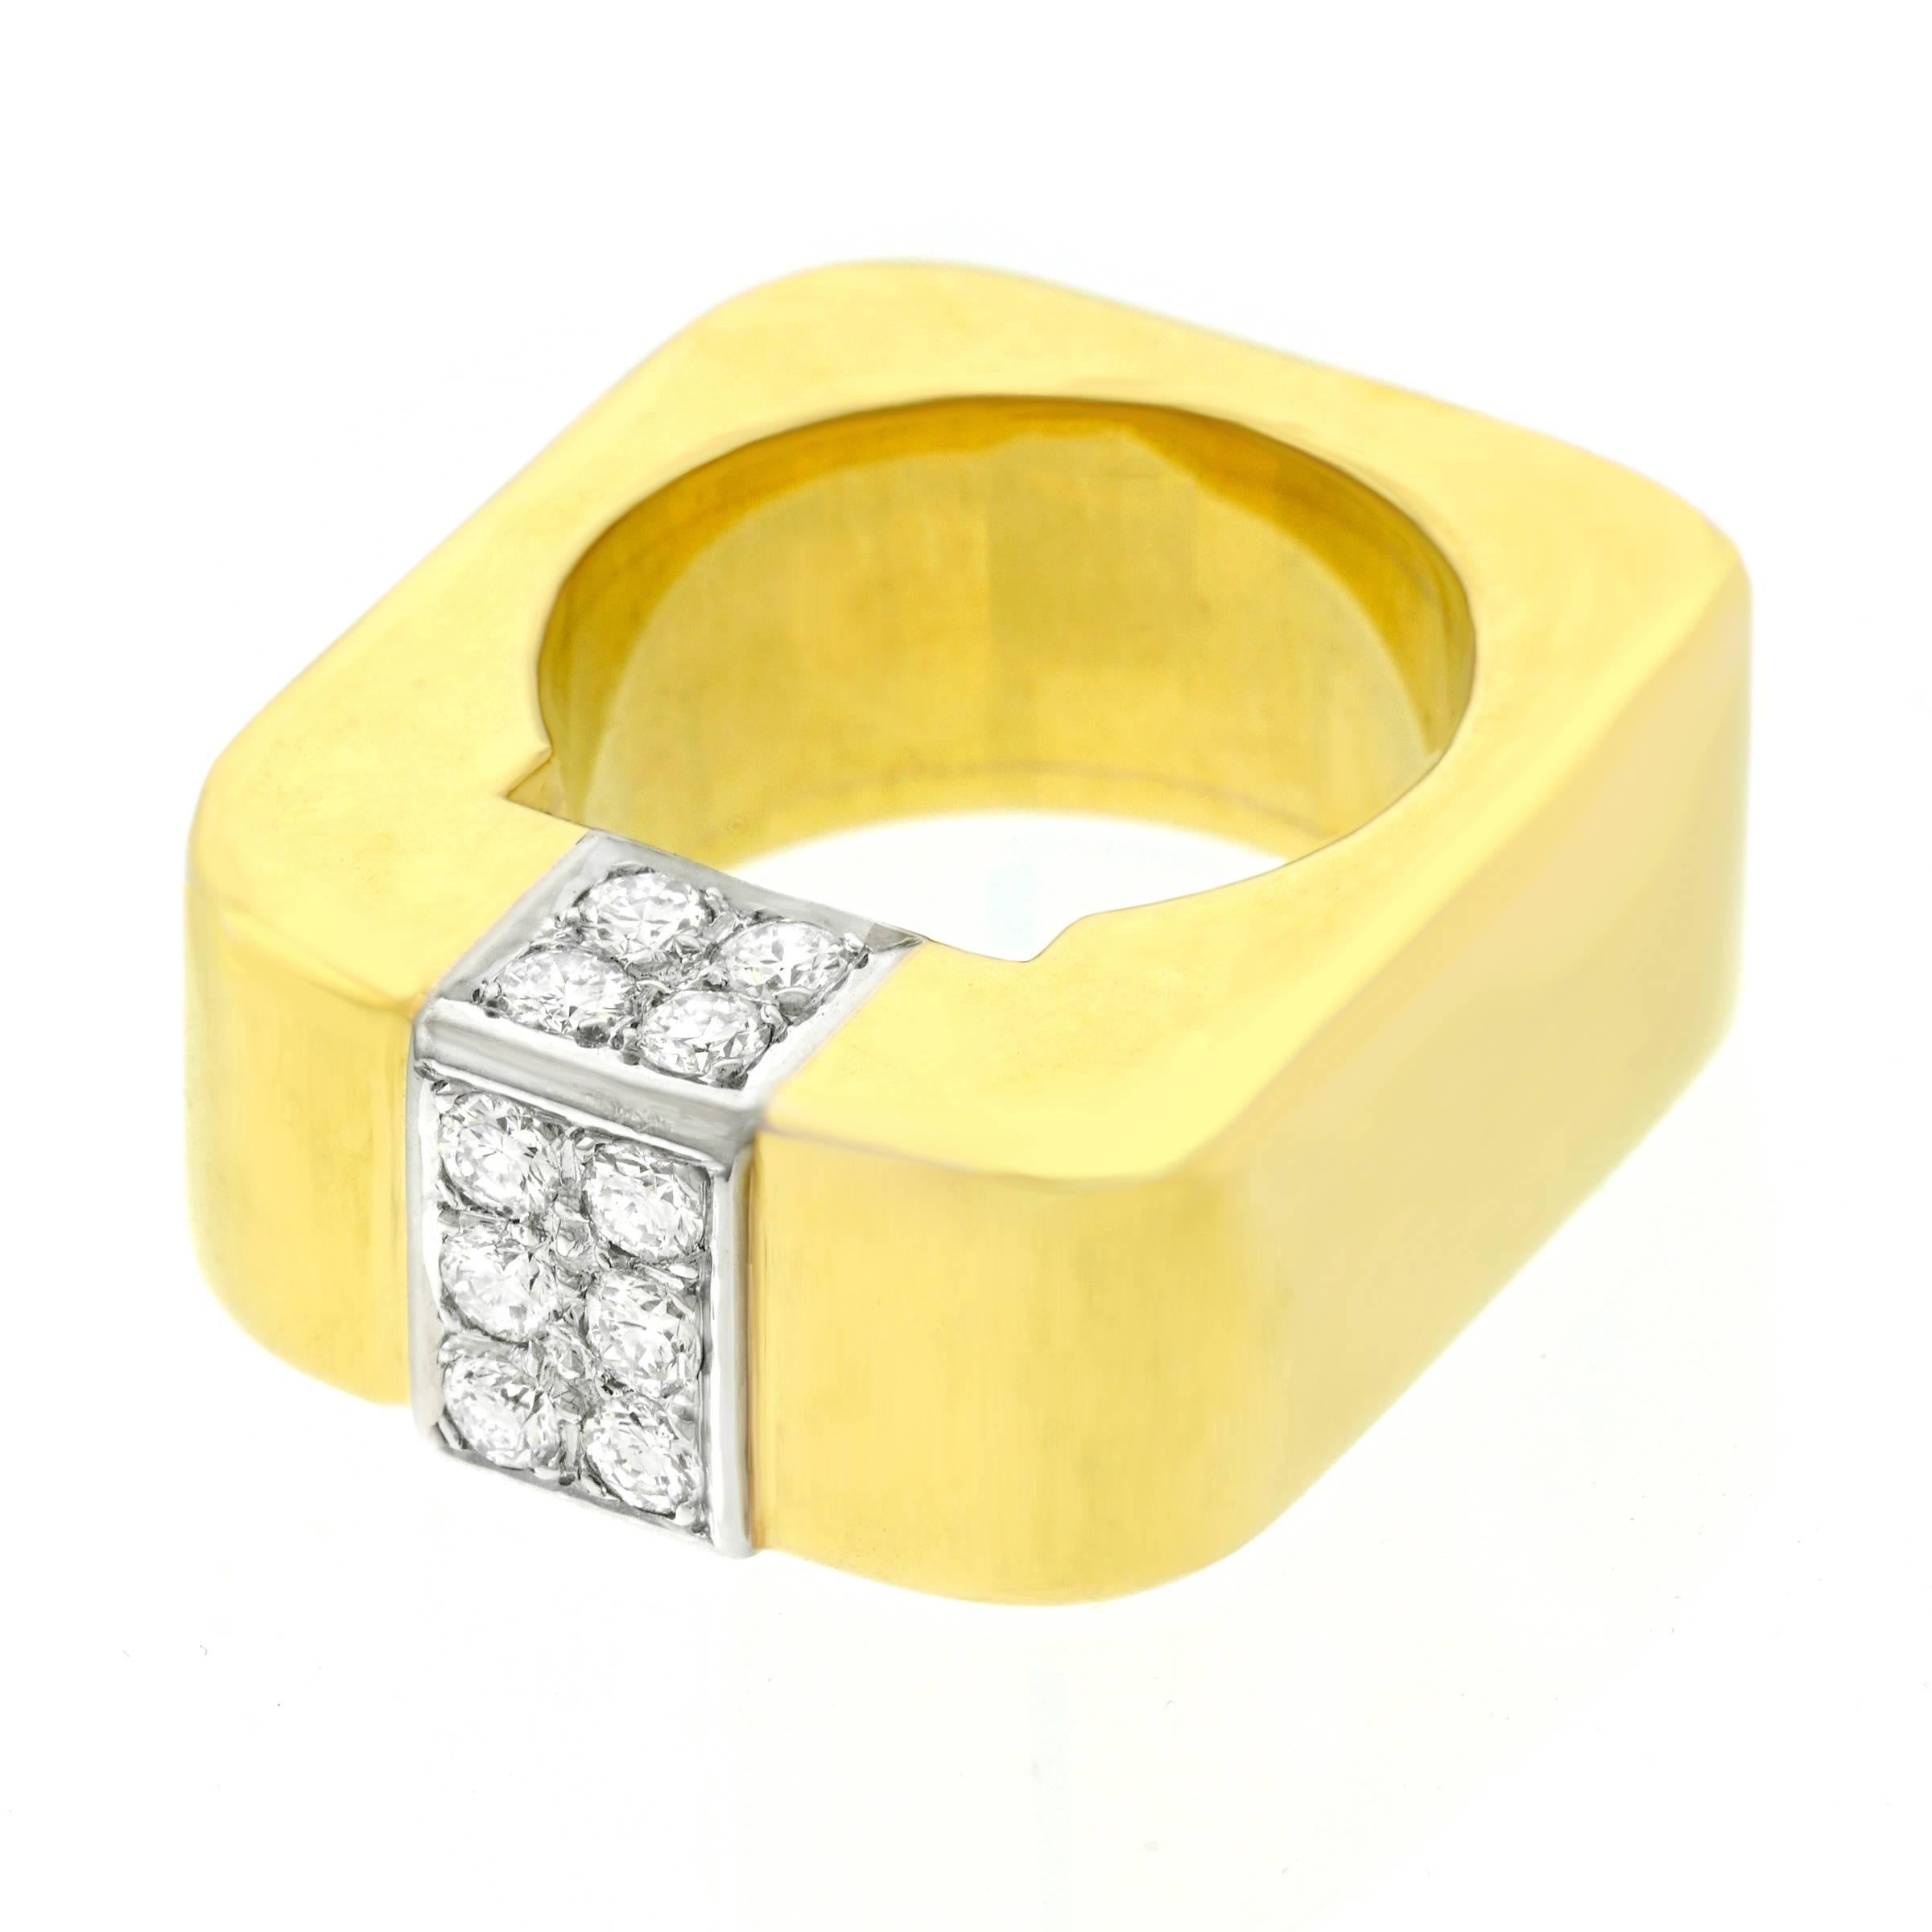 Modernist Weber & Cie Swiss Modern Diamond Set Gold Ring